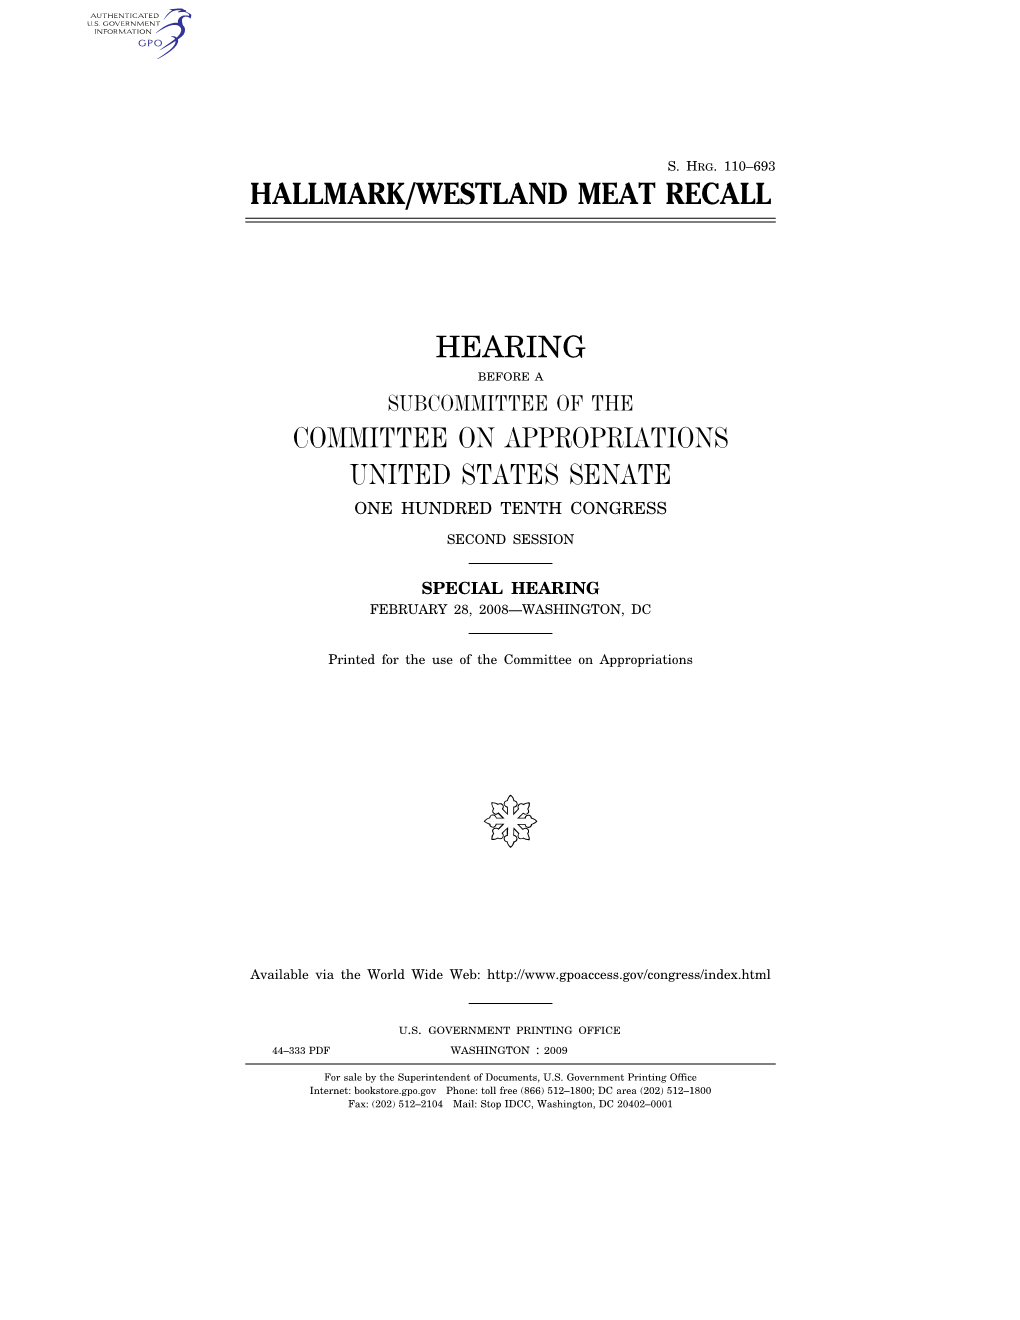 Hallmark/Westland Meat Recall Hearing